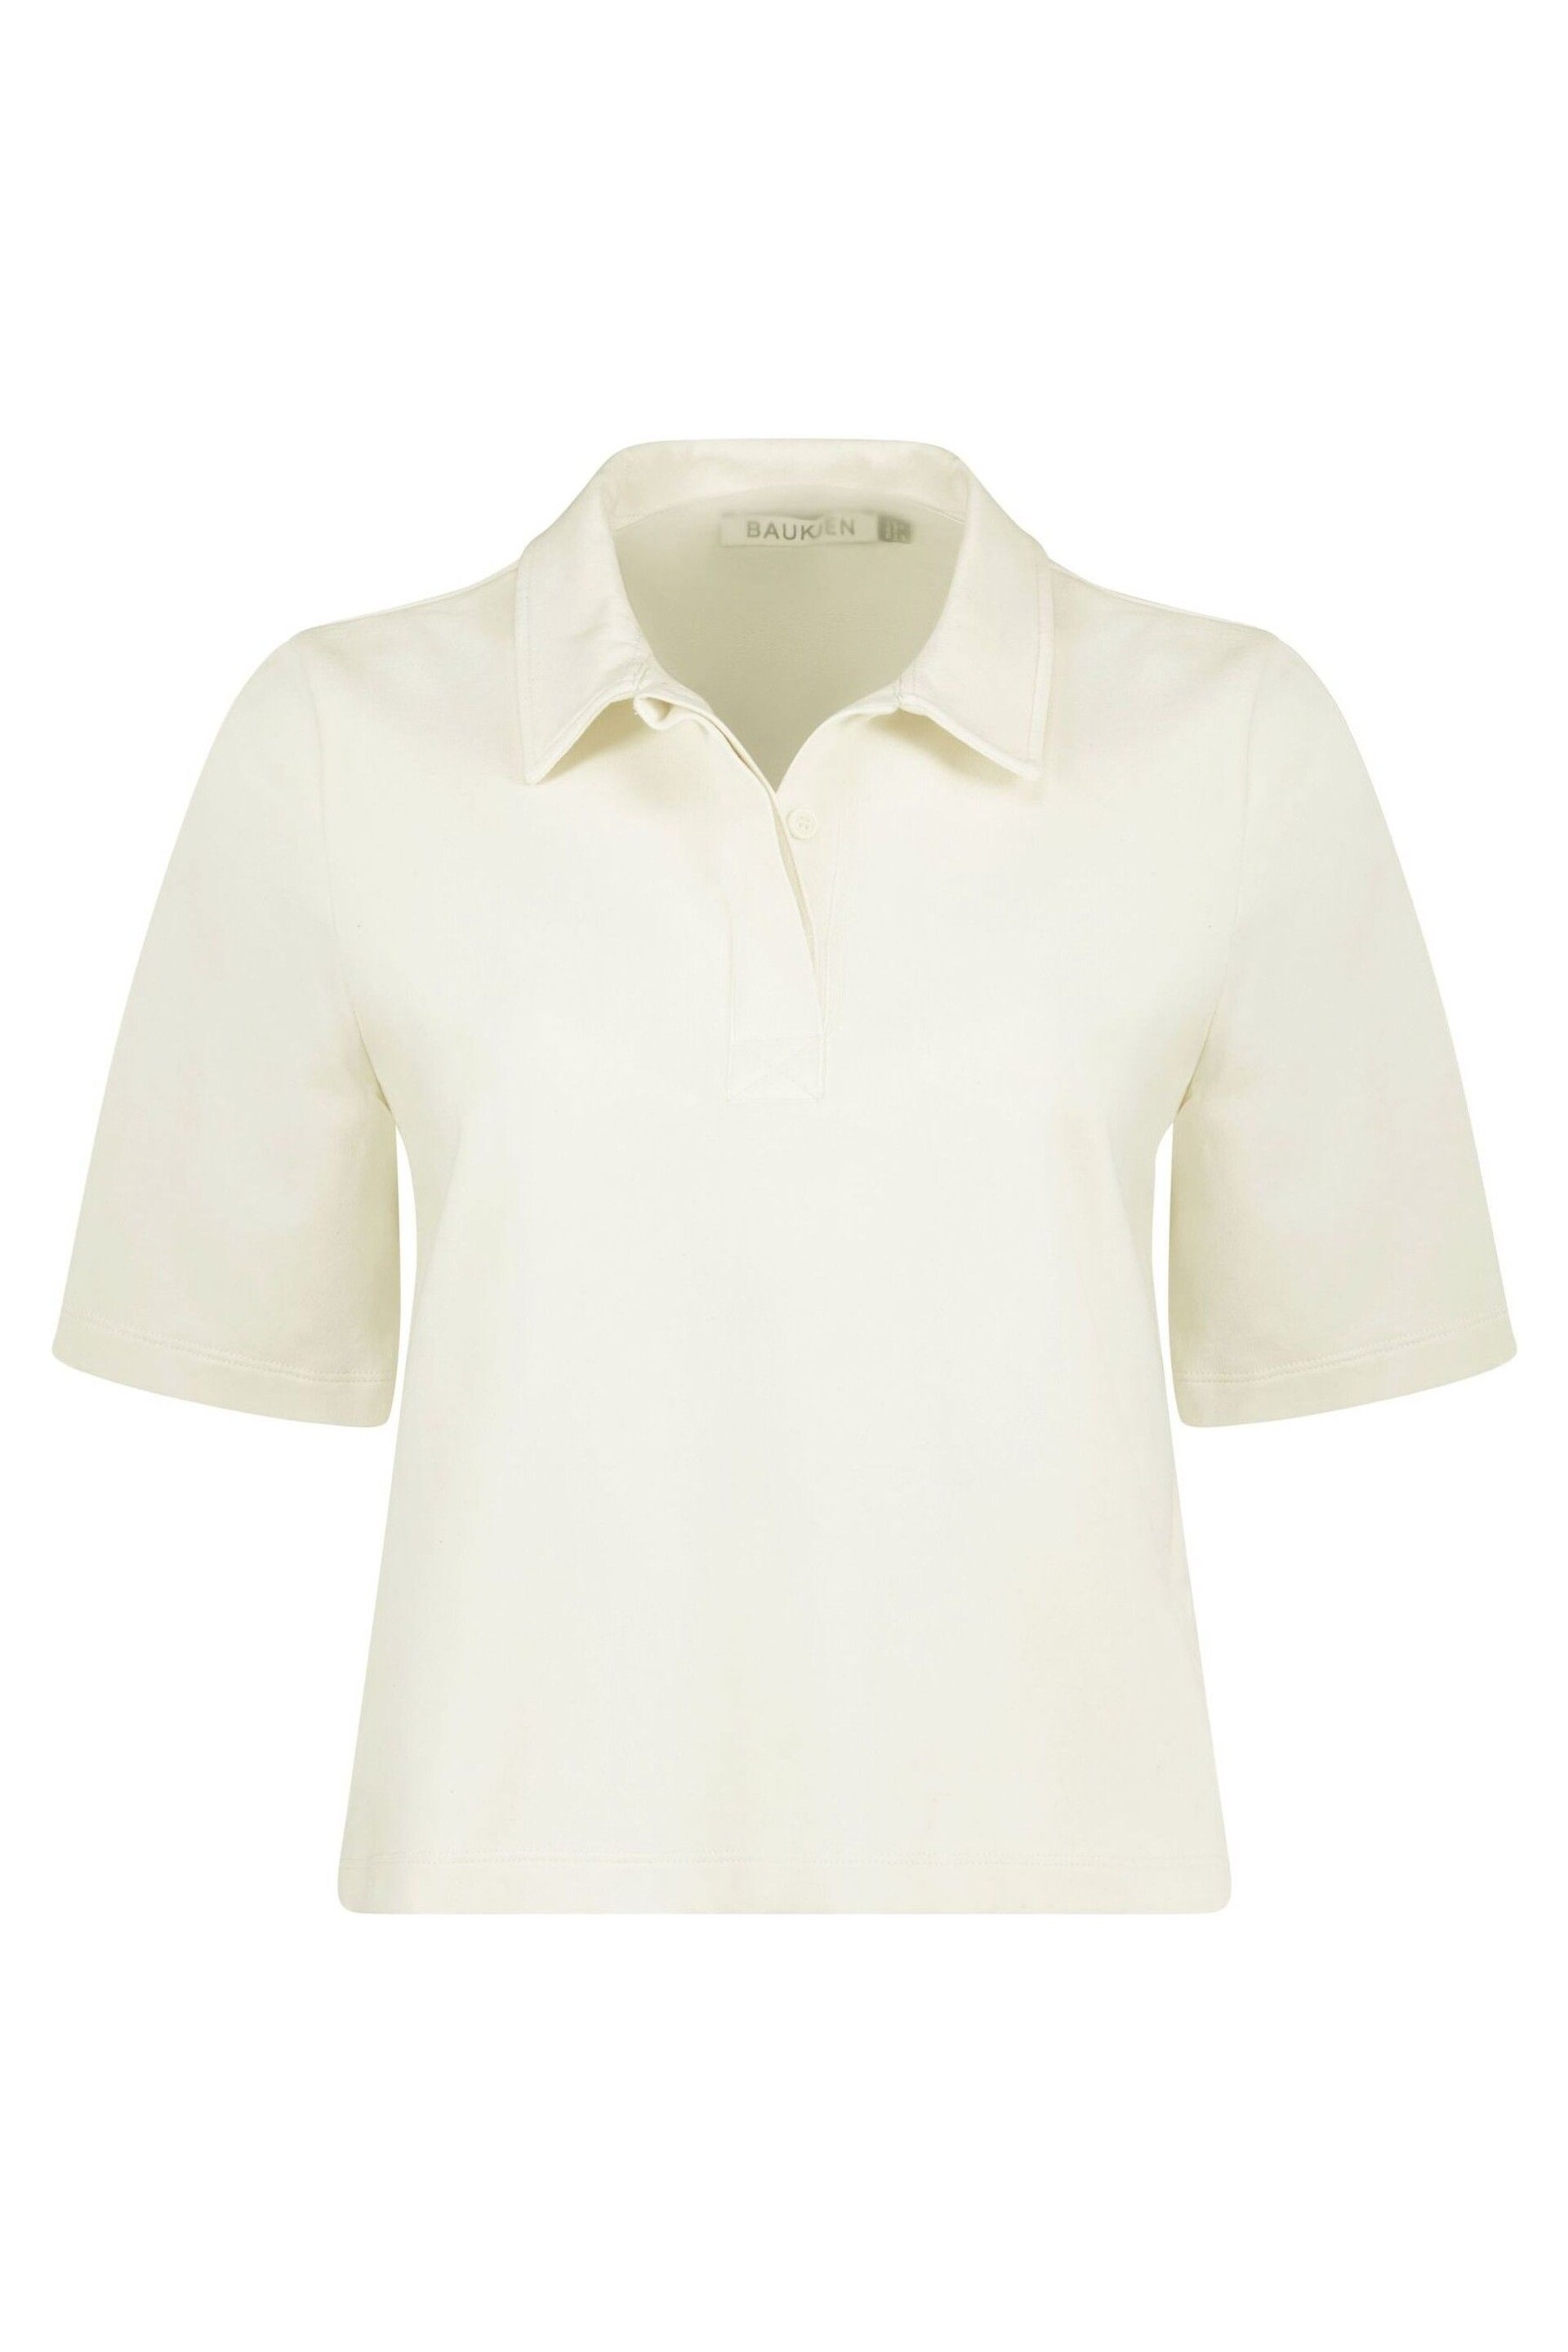 Baukjen Margaret Regenerative Cotton White Polo Shirt - Image 5 of 5